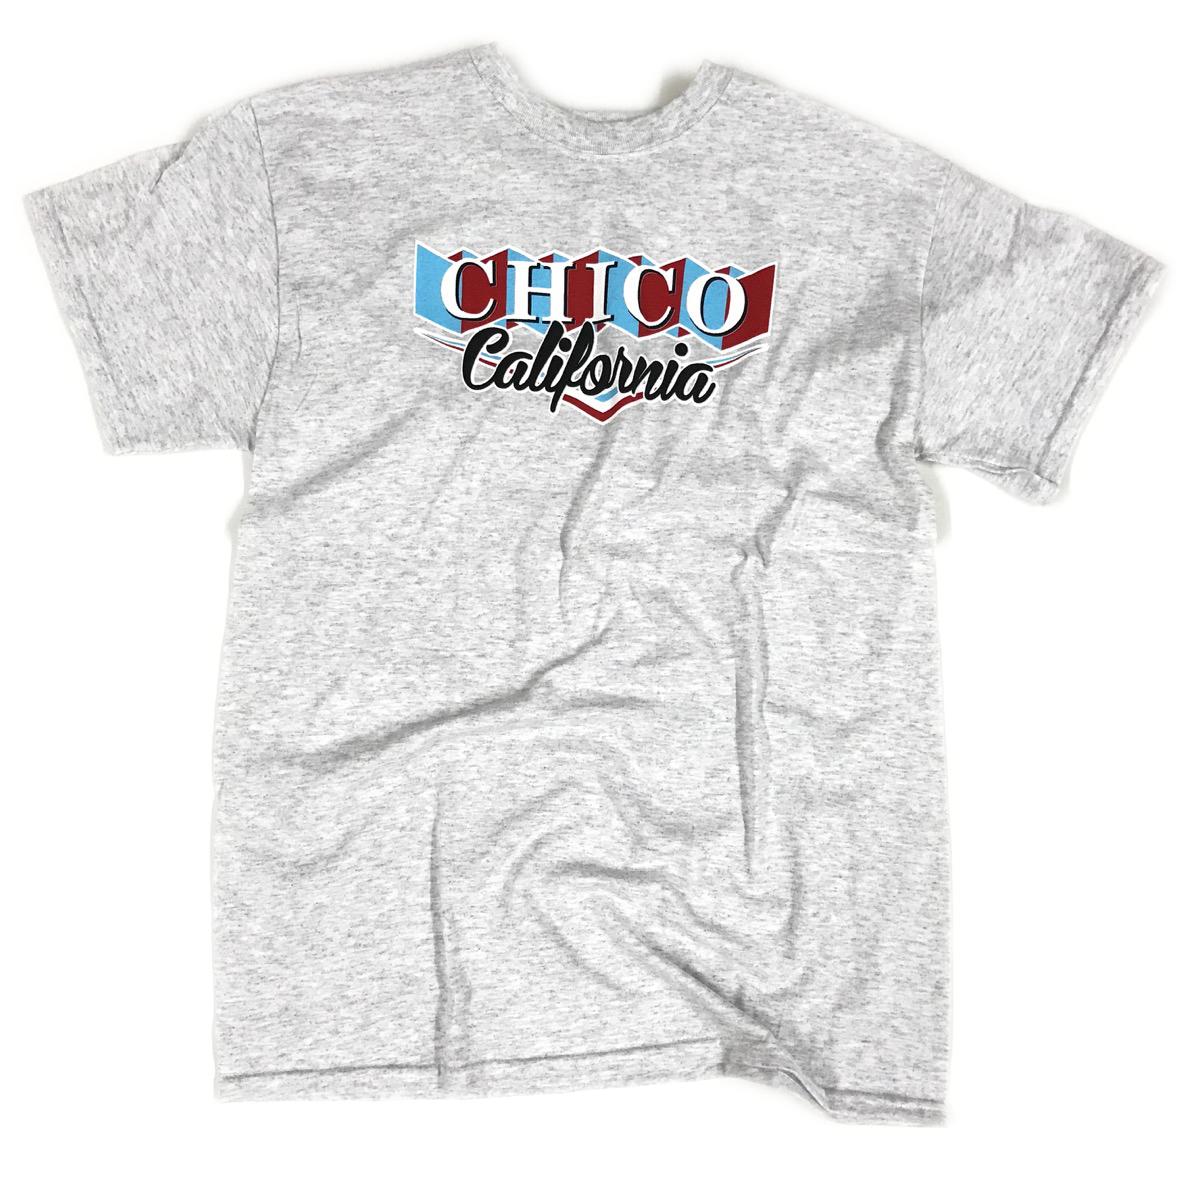 Circus Banner Chico T-shirt ASH XL  3245005.4